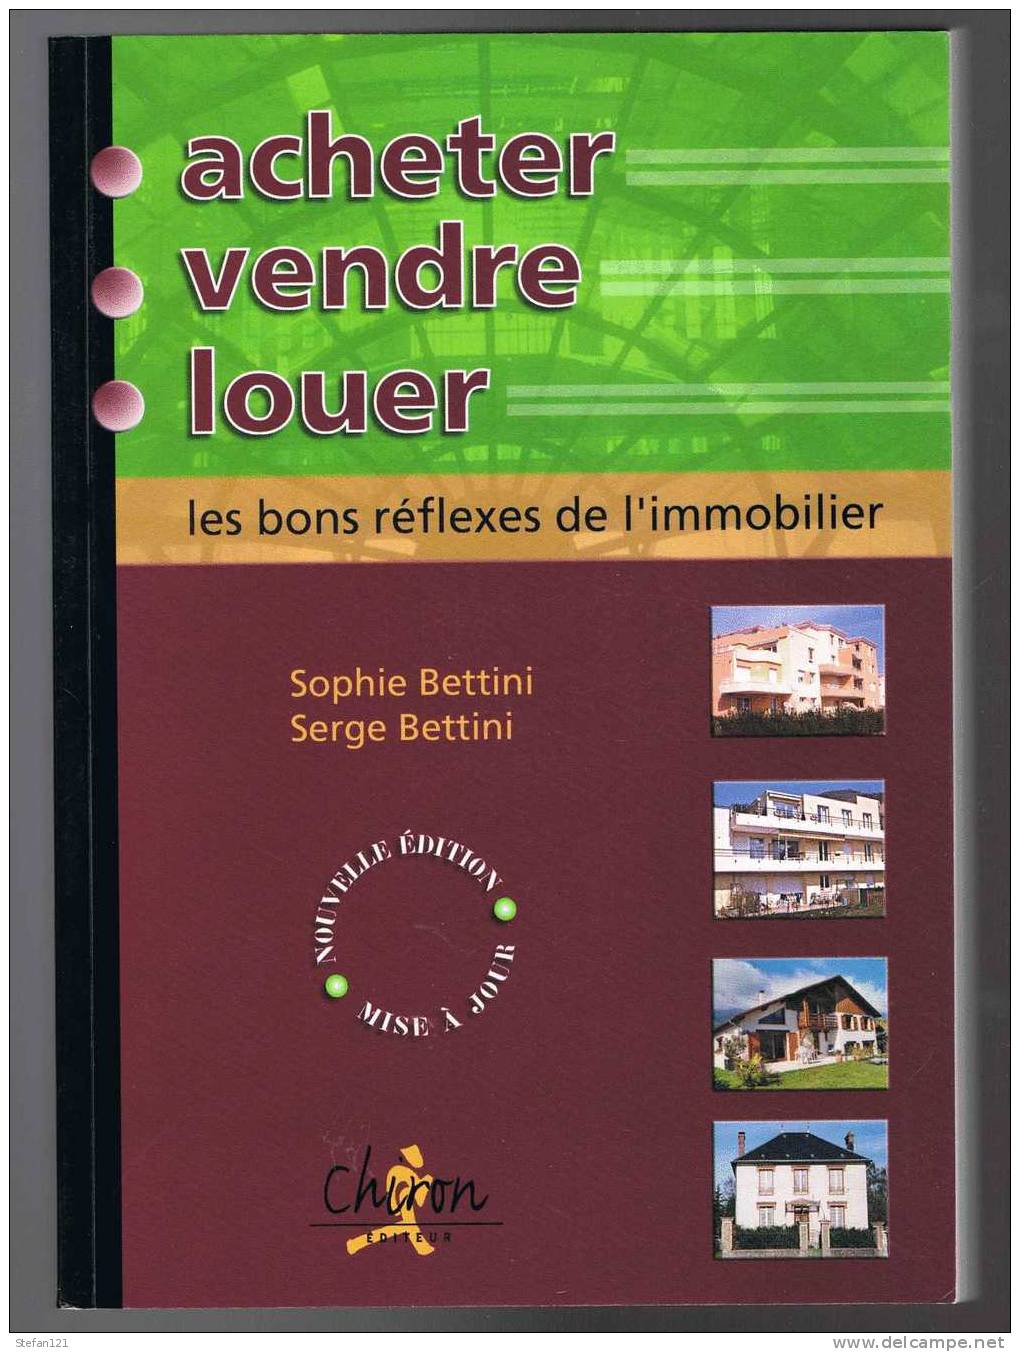 Acheter, Vendre, Louer - Sophie Et Serge Bettini - 2003 - Editeur Chiron - 288 Pages - 24 Cm X 17 Cm -- - Right